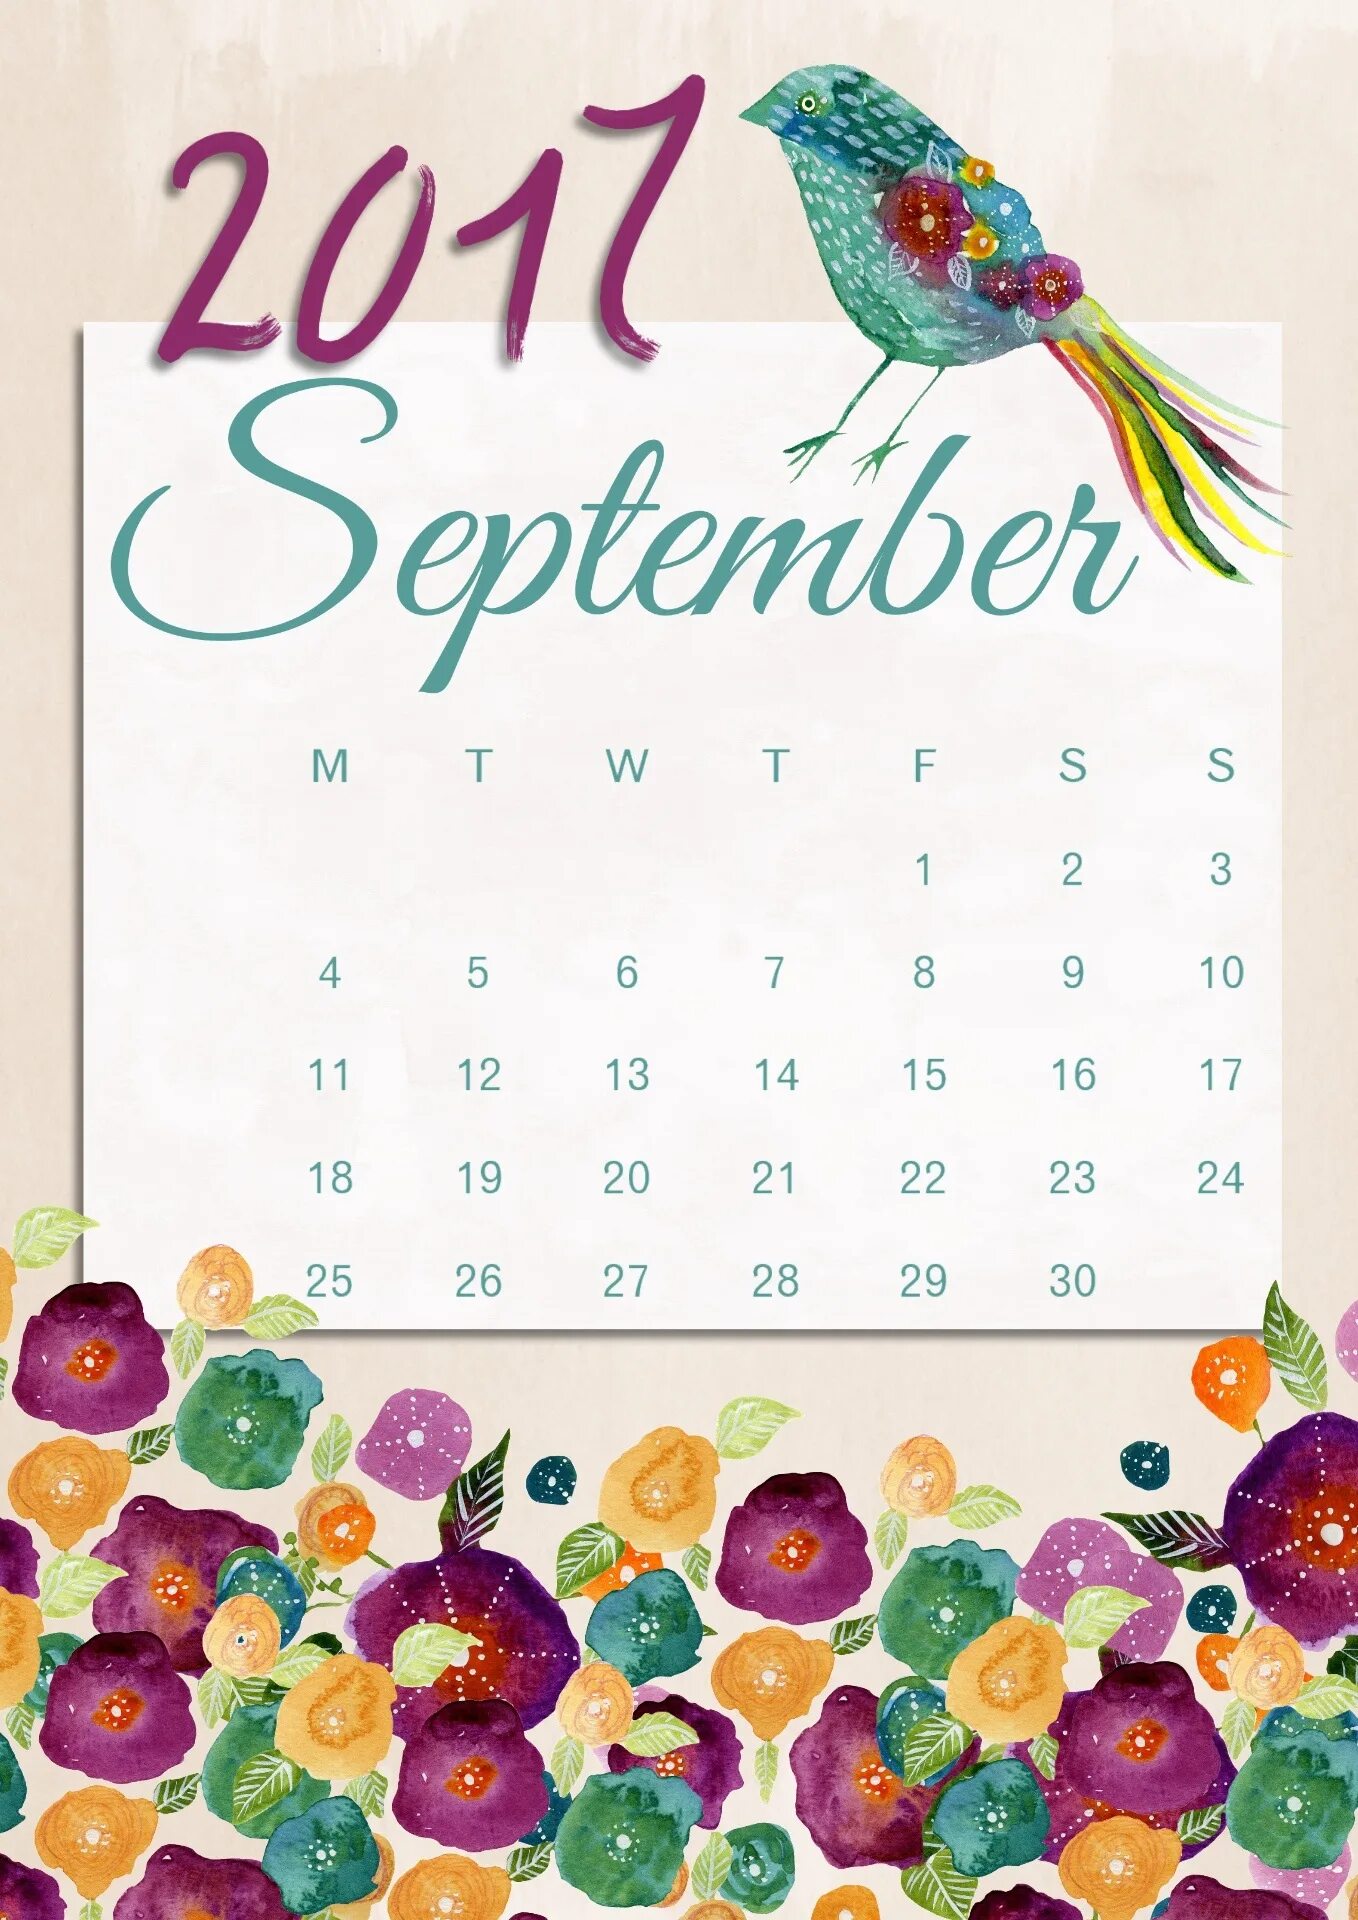 Календарь 2017 года. Сентябрь 2017 календарь. Календарь сентябрь 2017г. Календарь 2017 календарь. Календарь 2017 месяцам